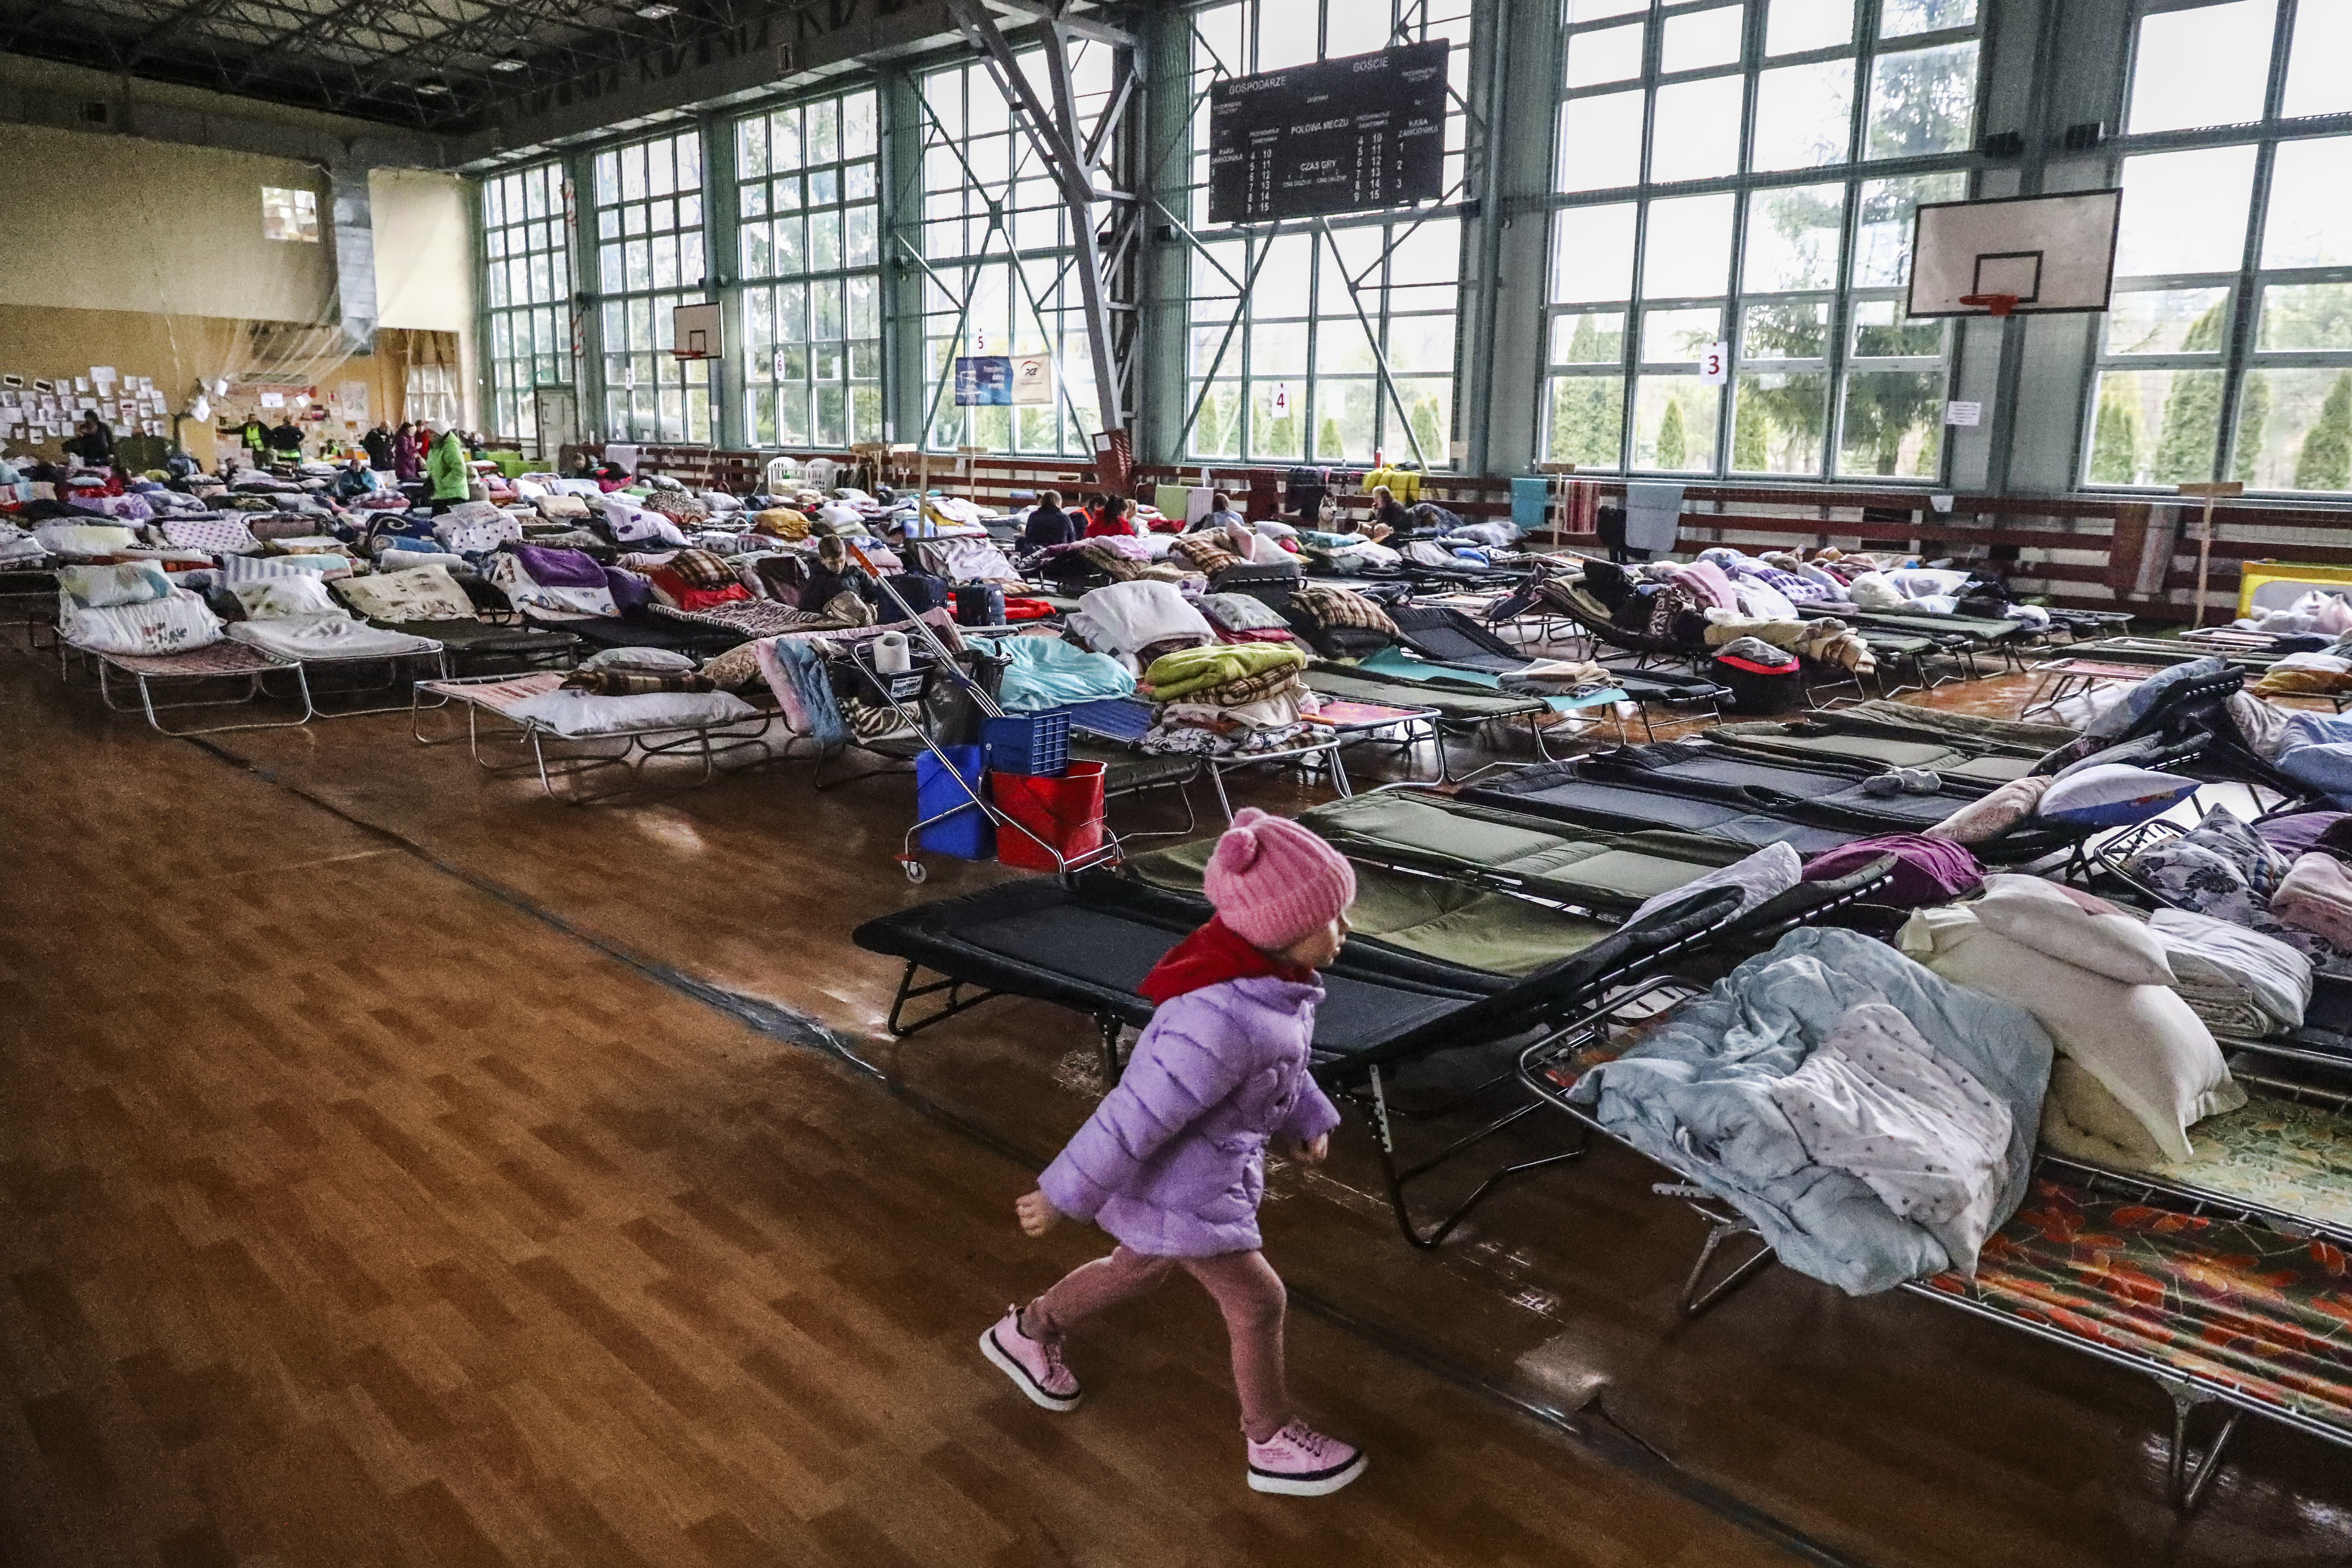 Oekraïense vluchtelingen in een tijdelijke opvang in een sporthal in Hrubieszow, Polen op 1 april 2022. © Beata Zawrzel / NurPhoto via Reuters.